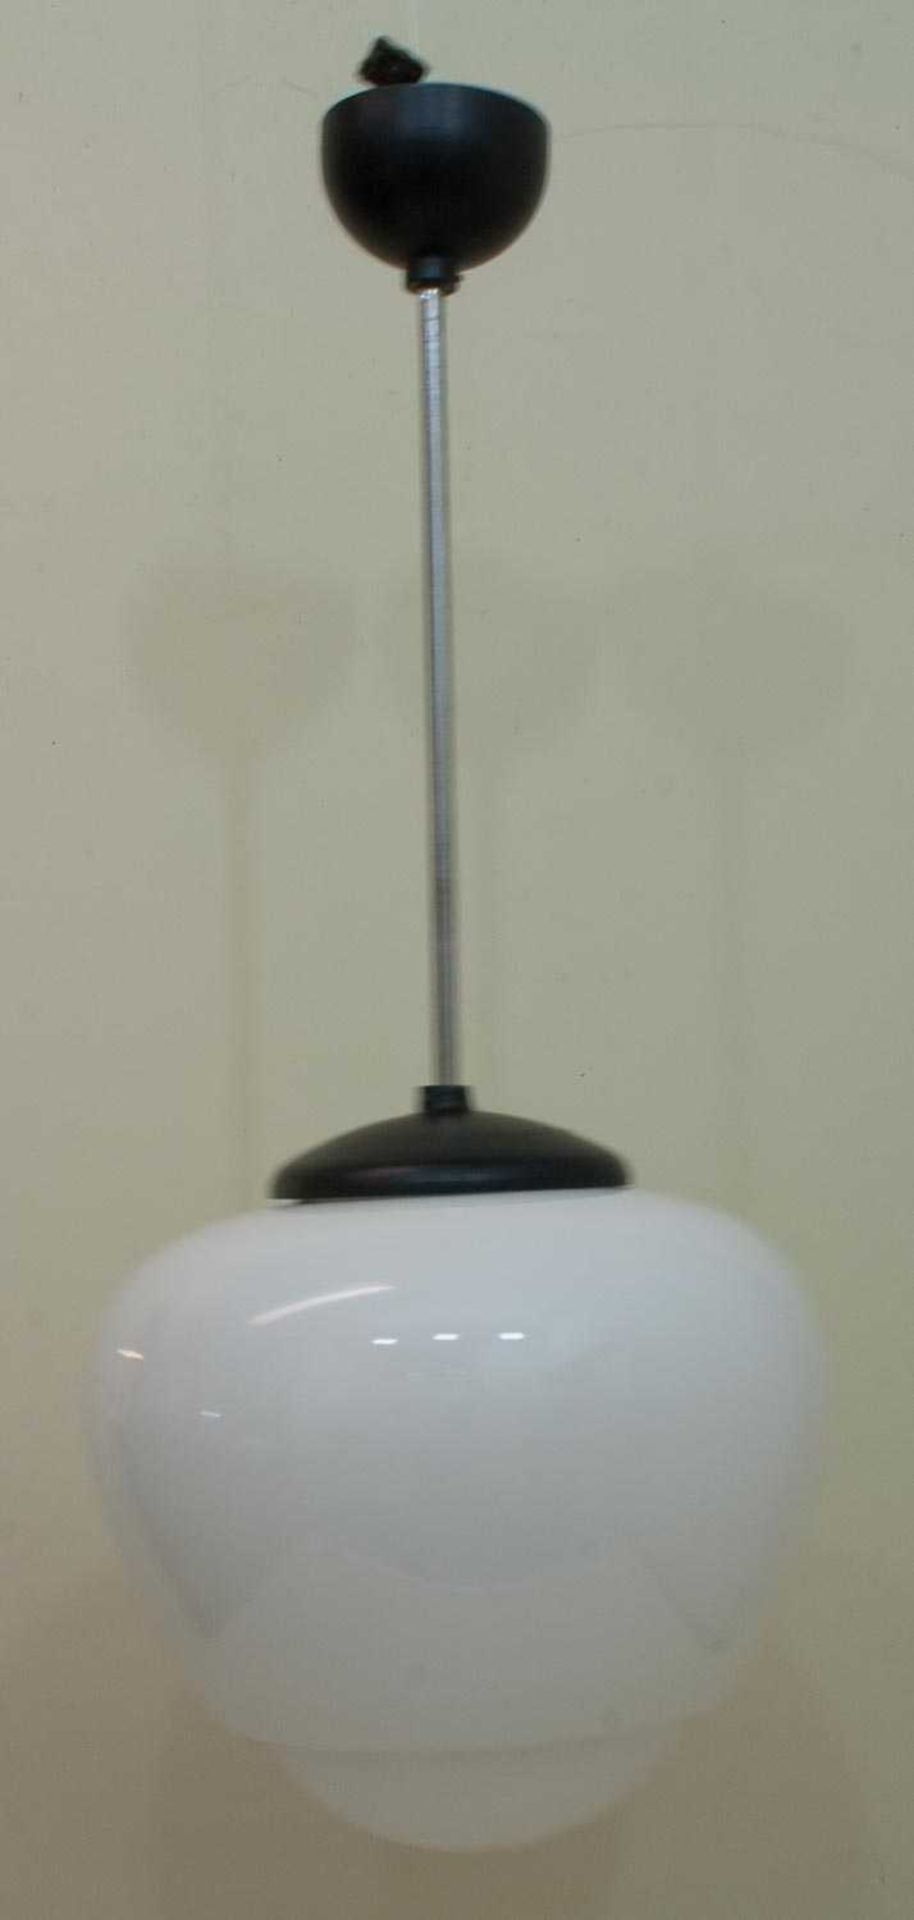 Deckenlampe im Bauhausstil, Industriedesign um 1930er Jahre, kugelförmige, getreppte Milchglaskuppel